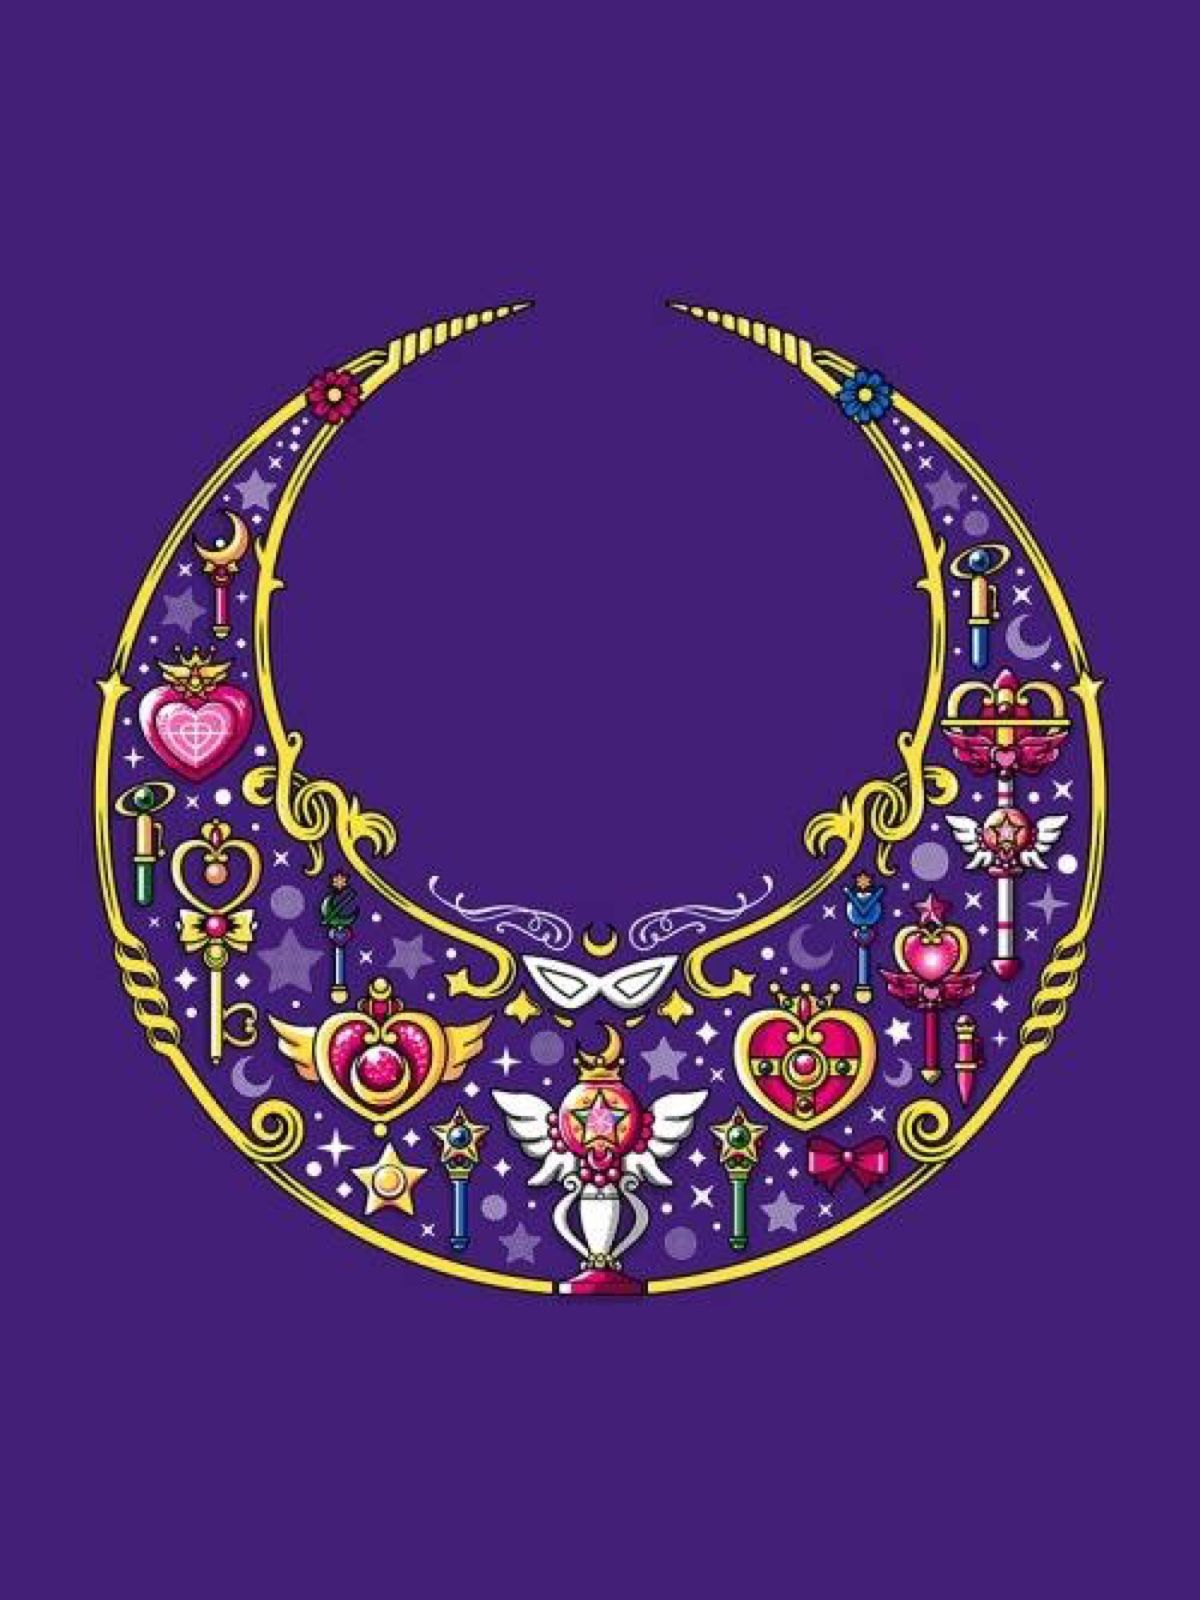 ipad mini wallpaper tumblr,purple,violet,fashion accessory,jewellery,pattern